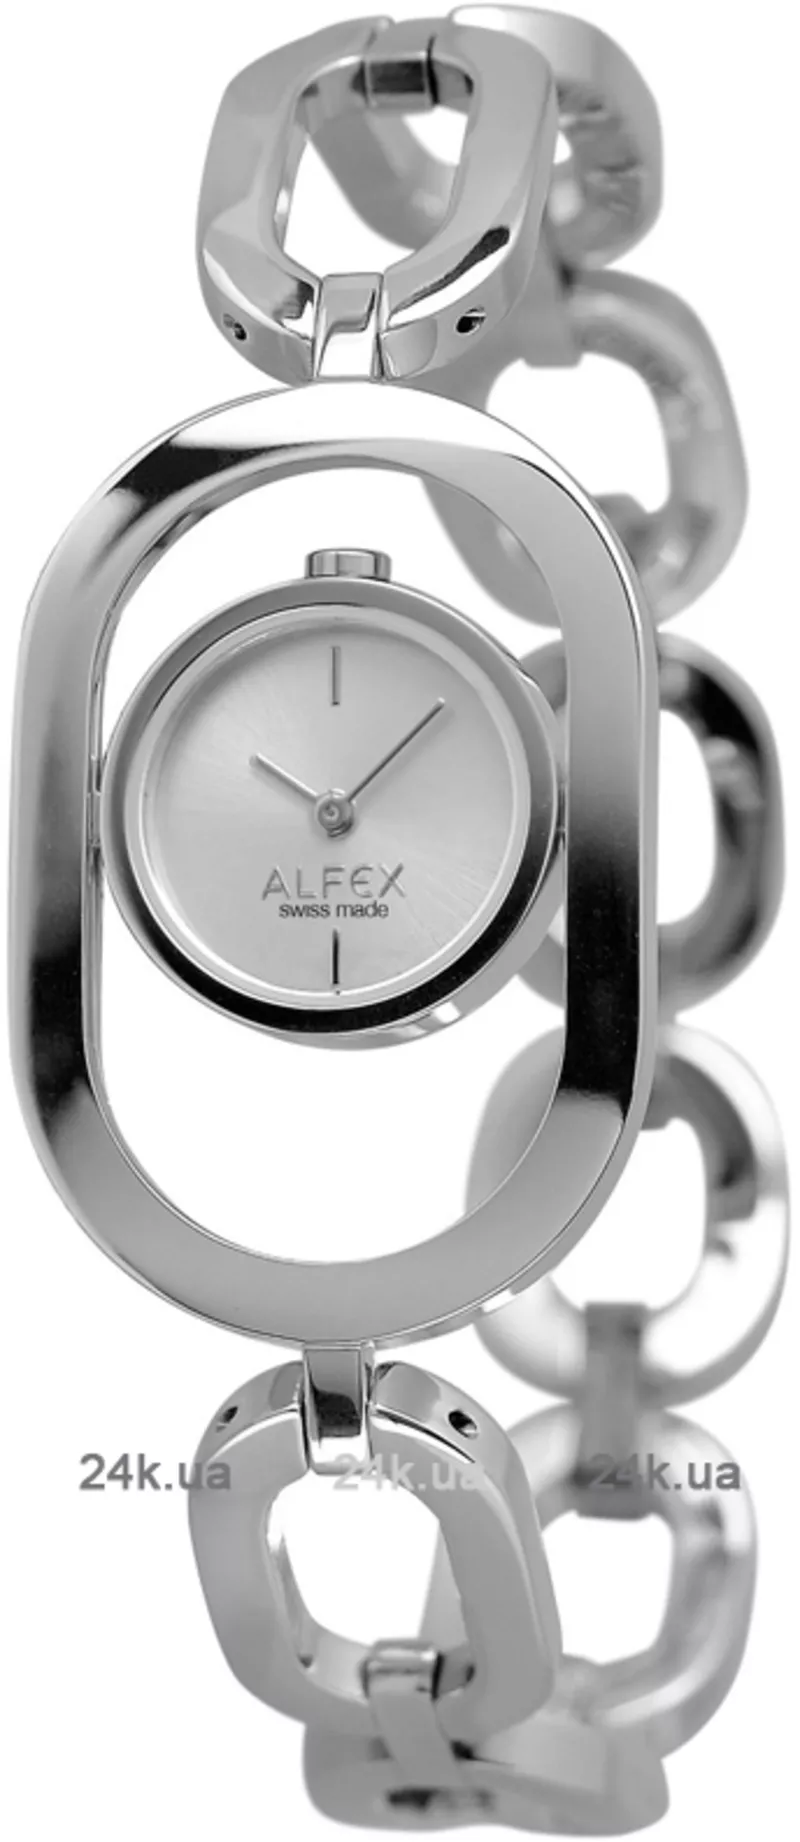 Часы Alfex 5722/001